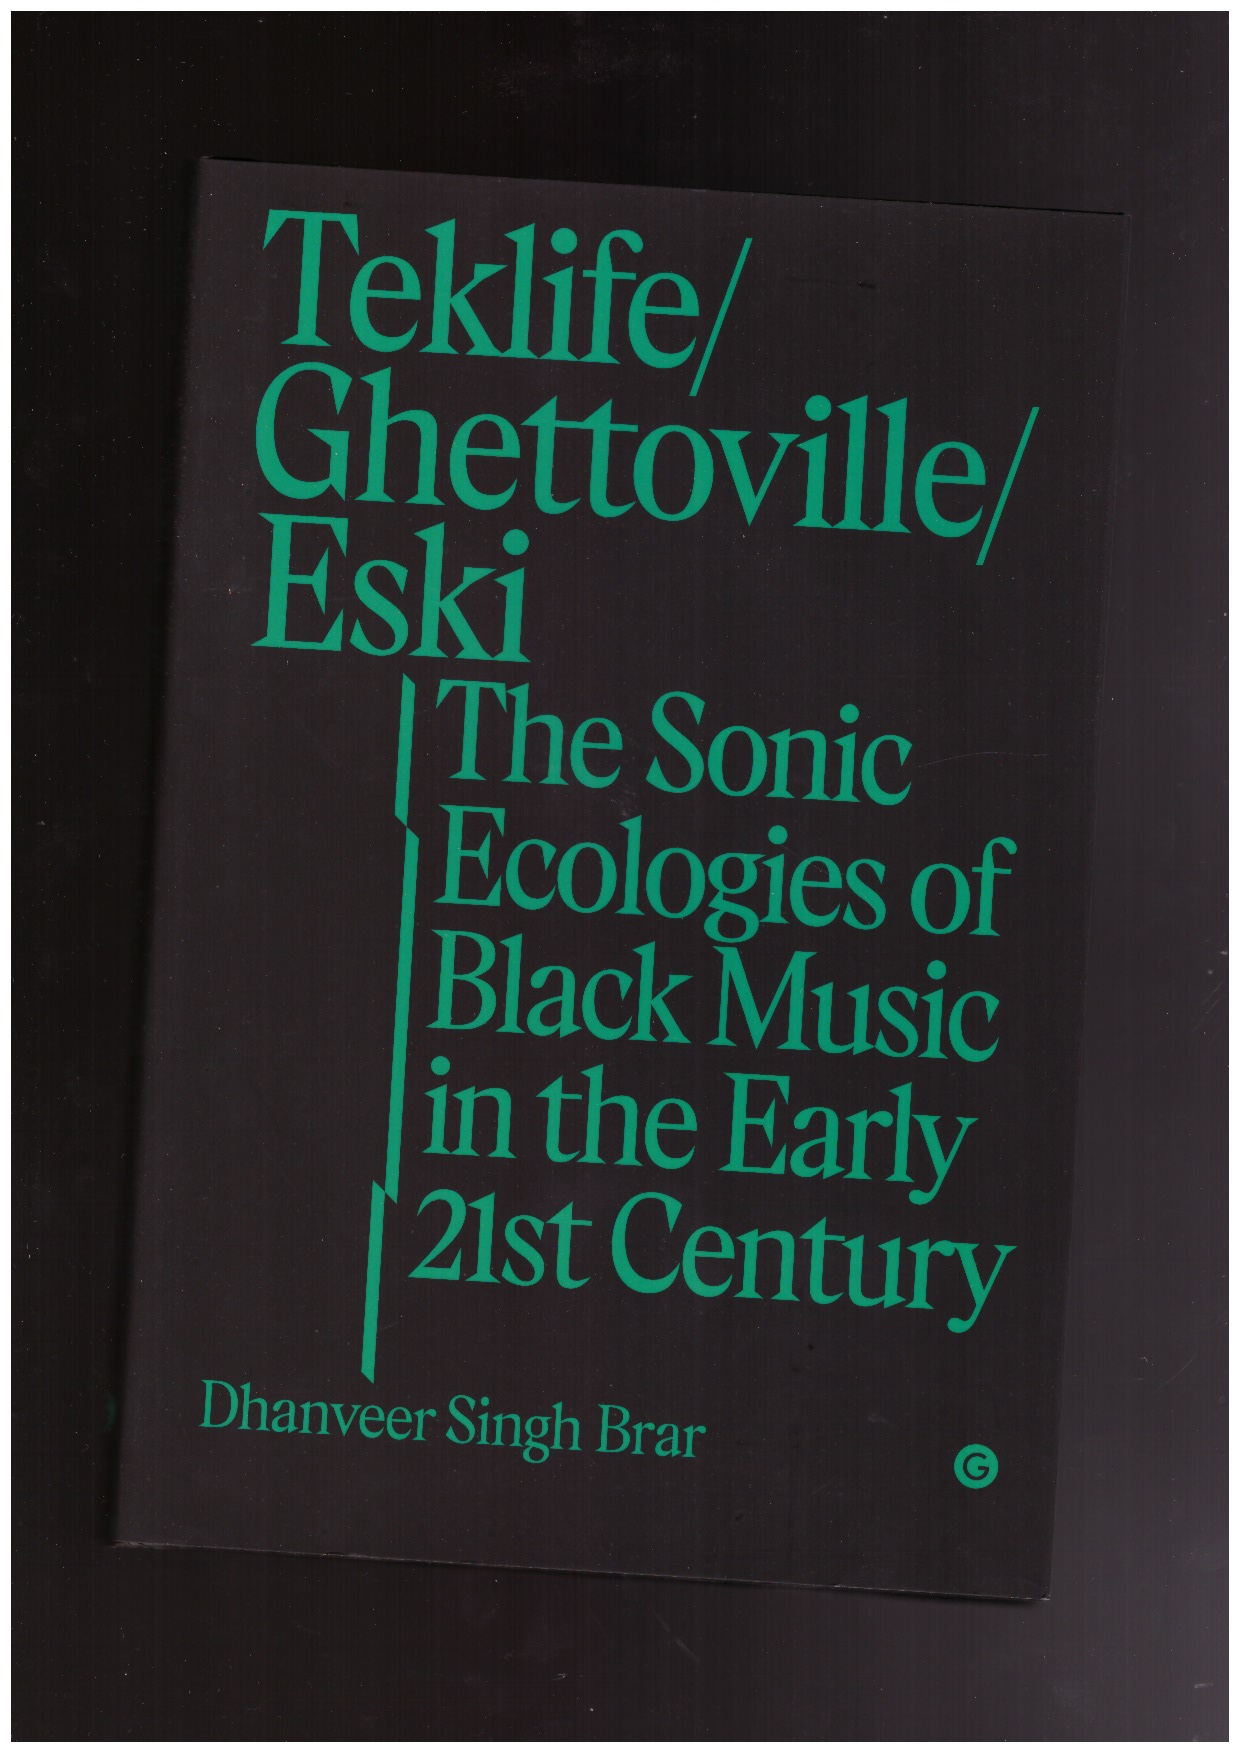 SINGH BRAR, Dhanveer - Teklife, Ghettoville, Eski. The Sonic Ecologies of Black Music in the Early 21st Century